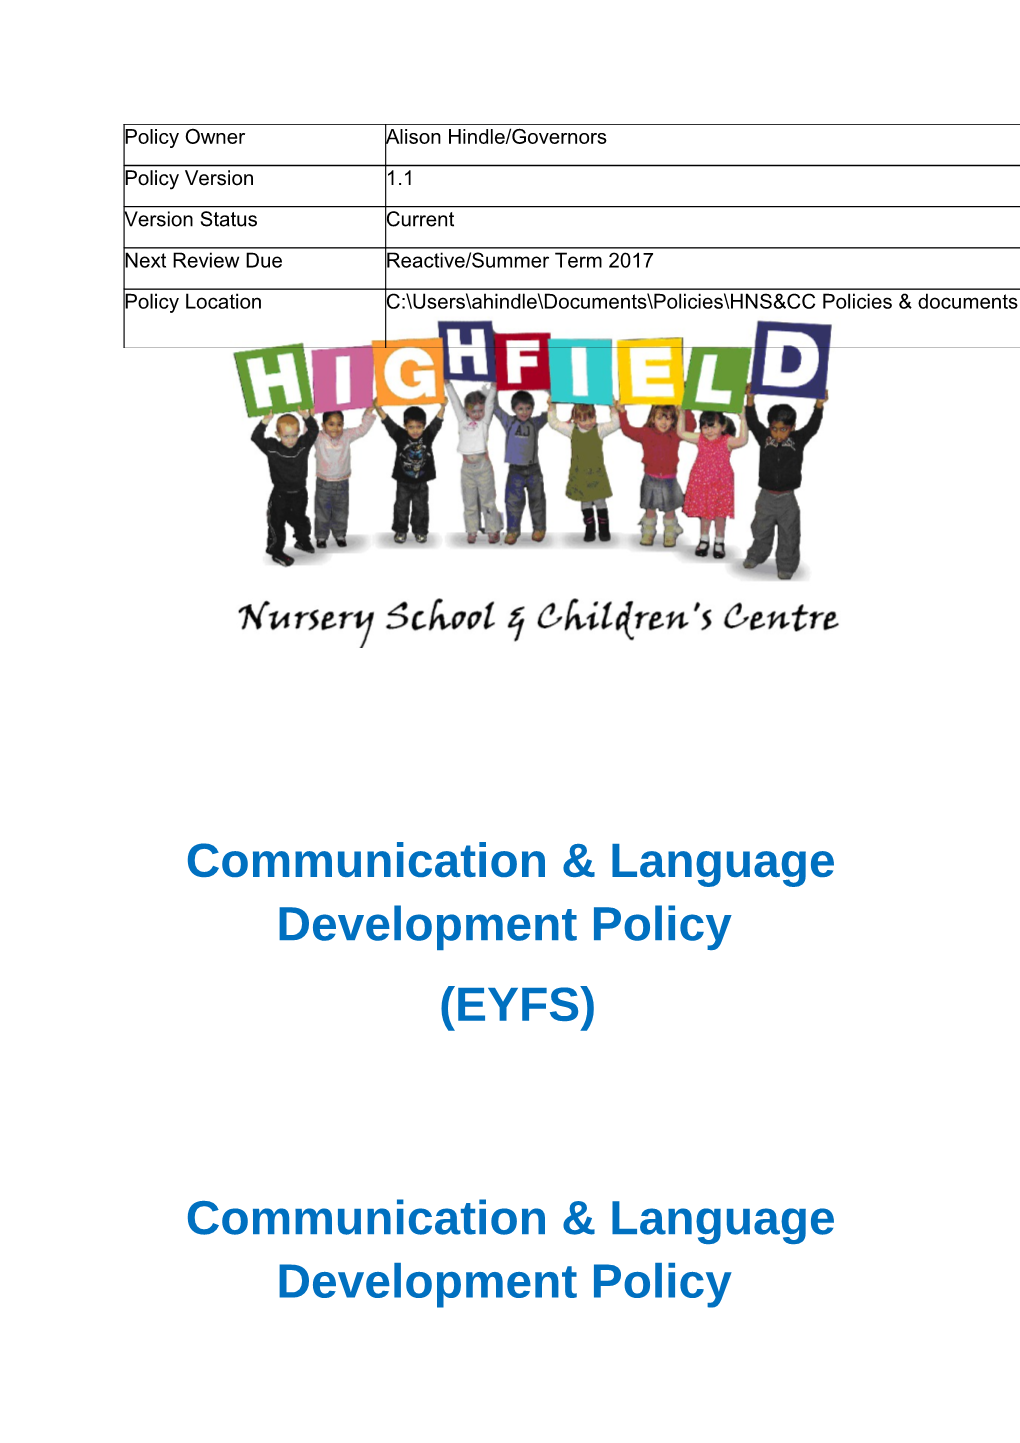 Communication & Language Development Policy